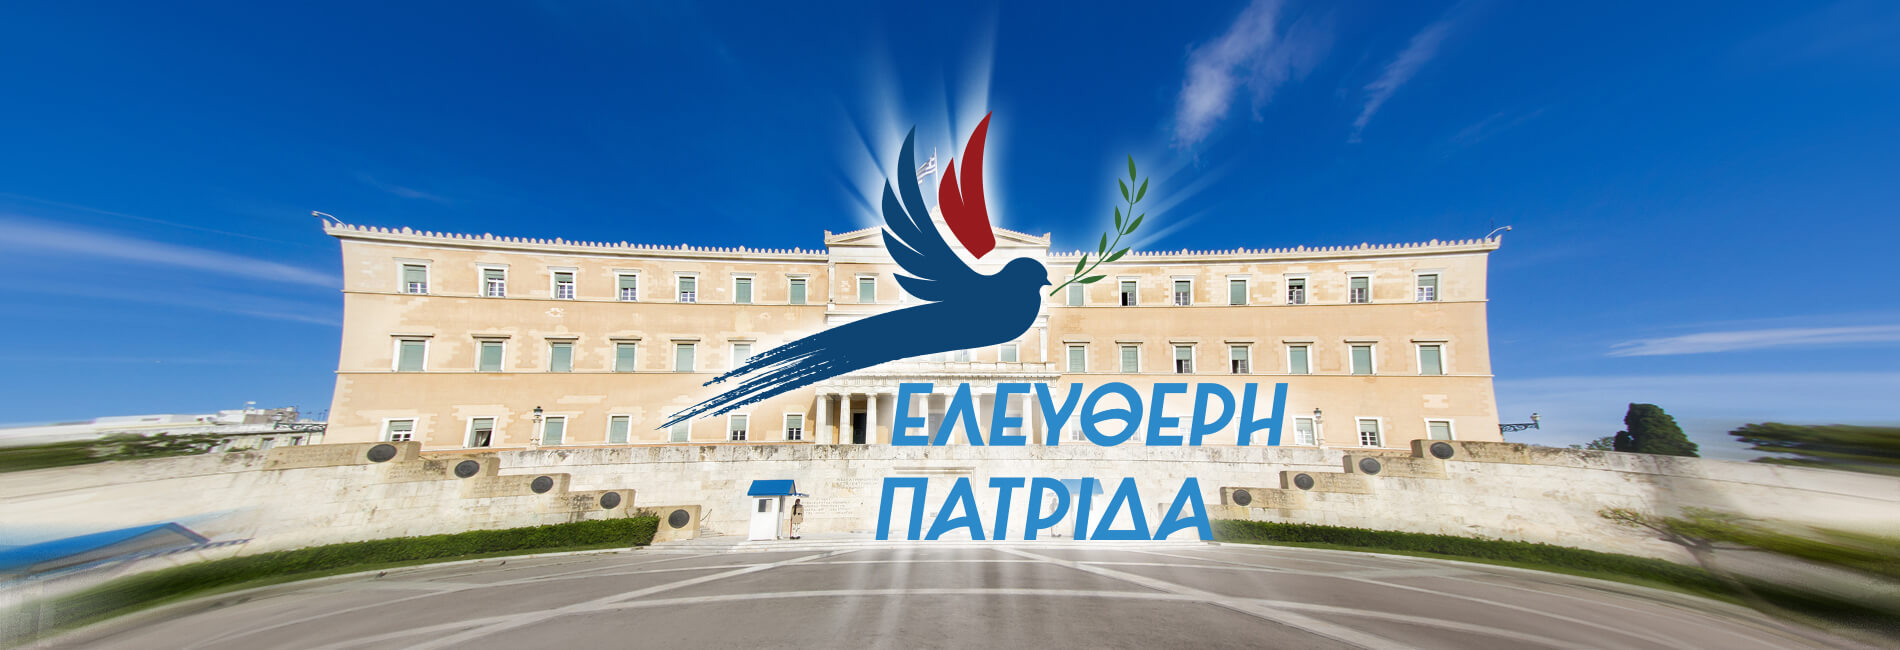 Ελεύθερή Πατρίδα για Θεοφάνια: «Μεθοδευμένη επίθεση της κυβέρνησης ΝΔ στην Ορθοδοξία»